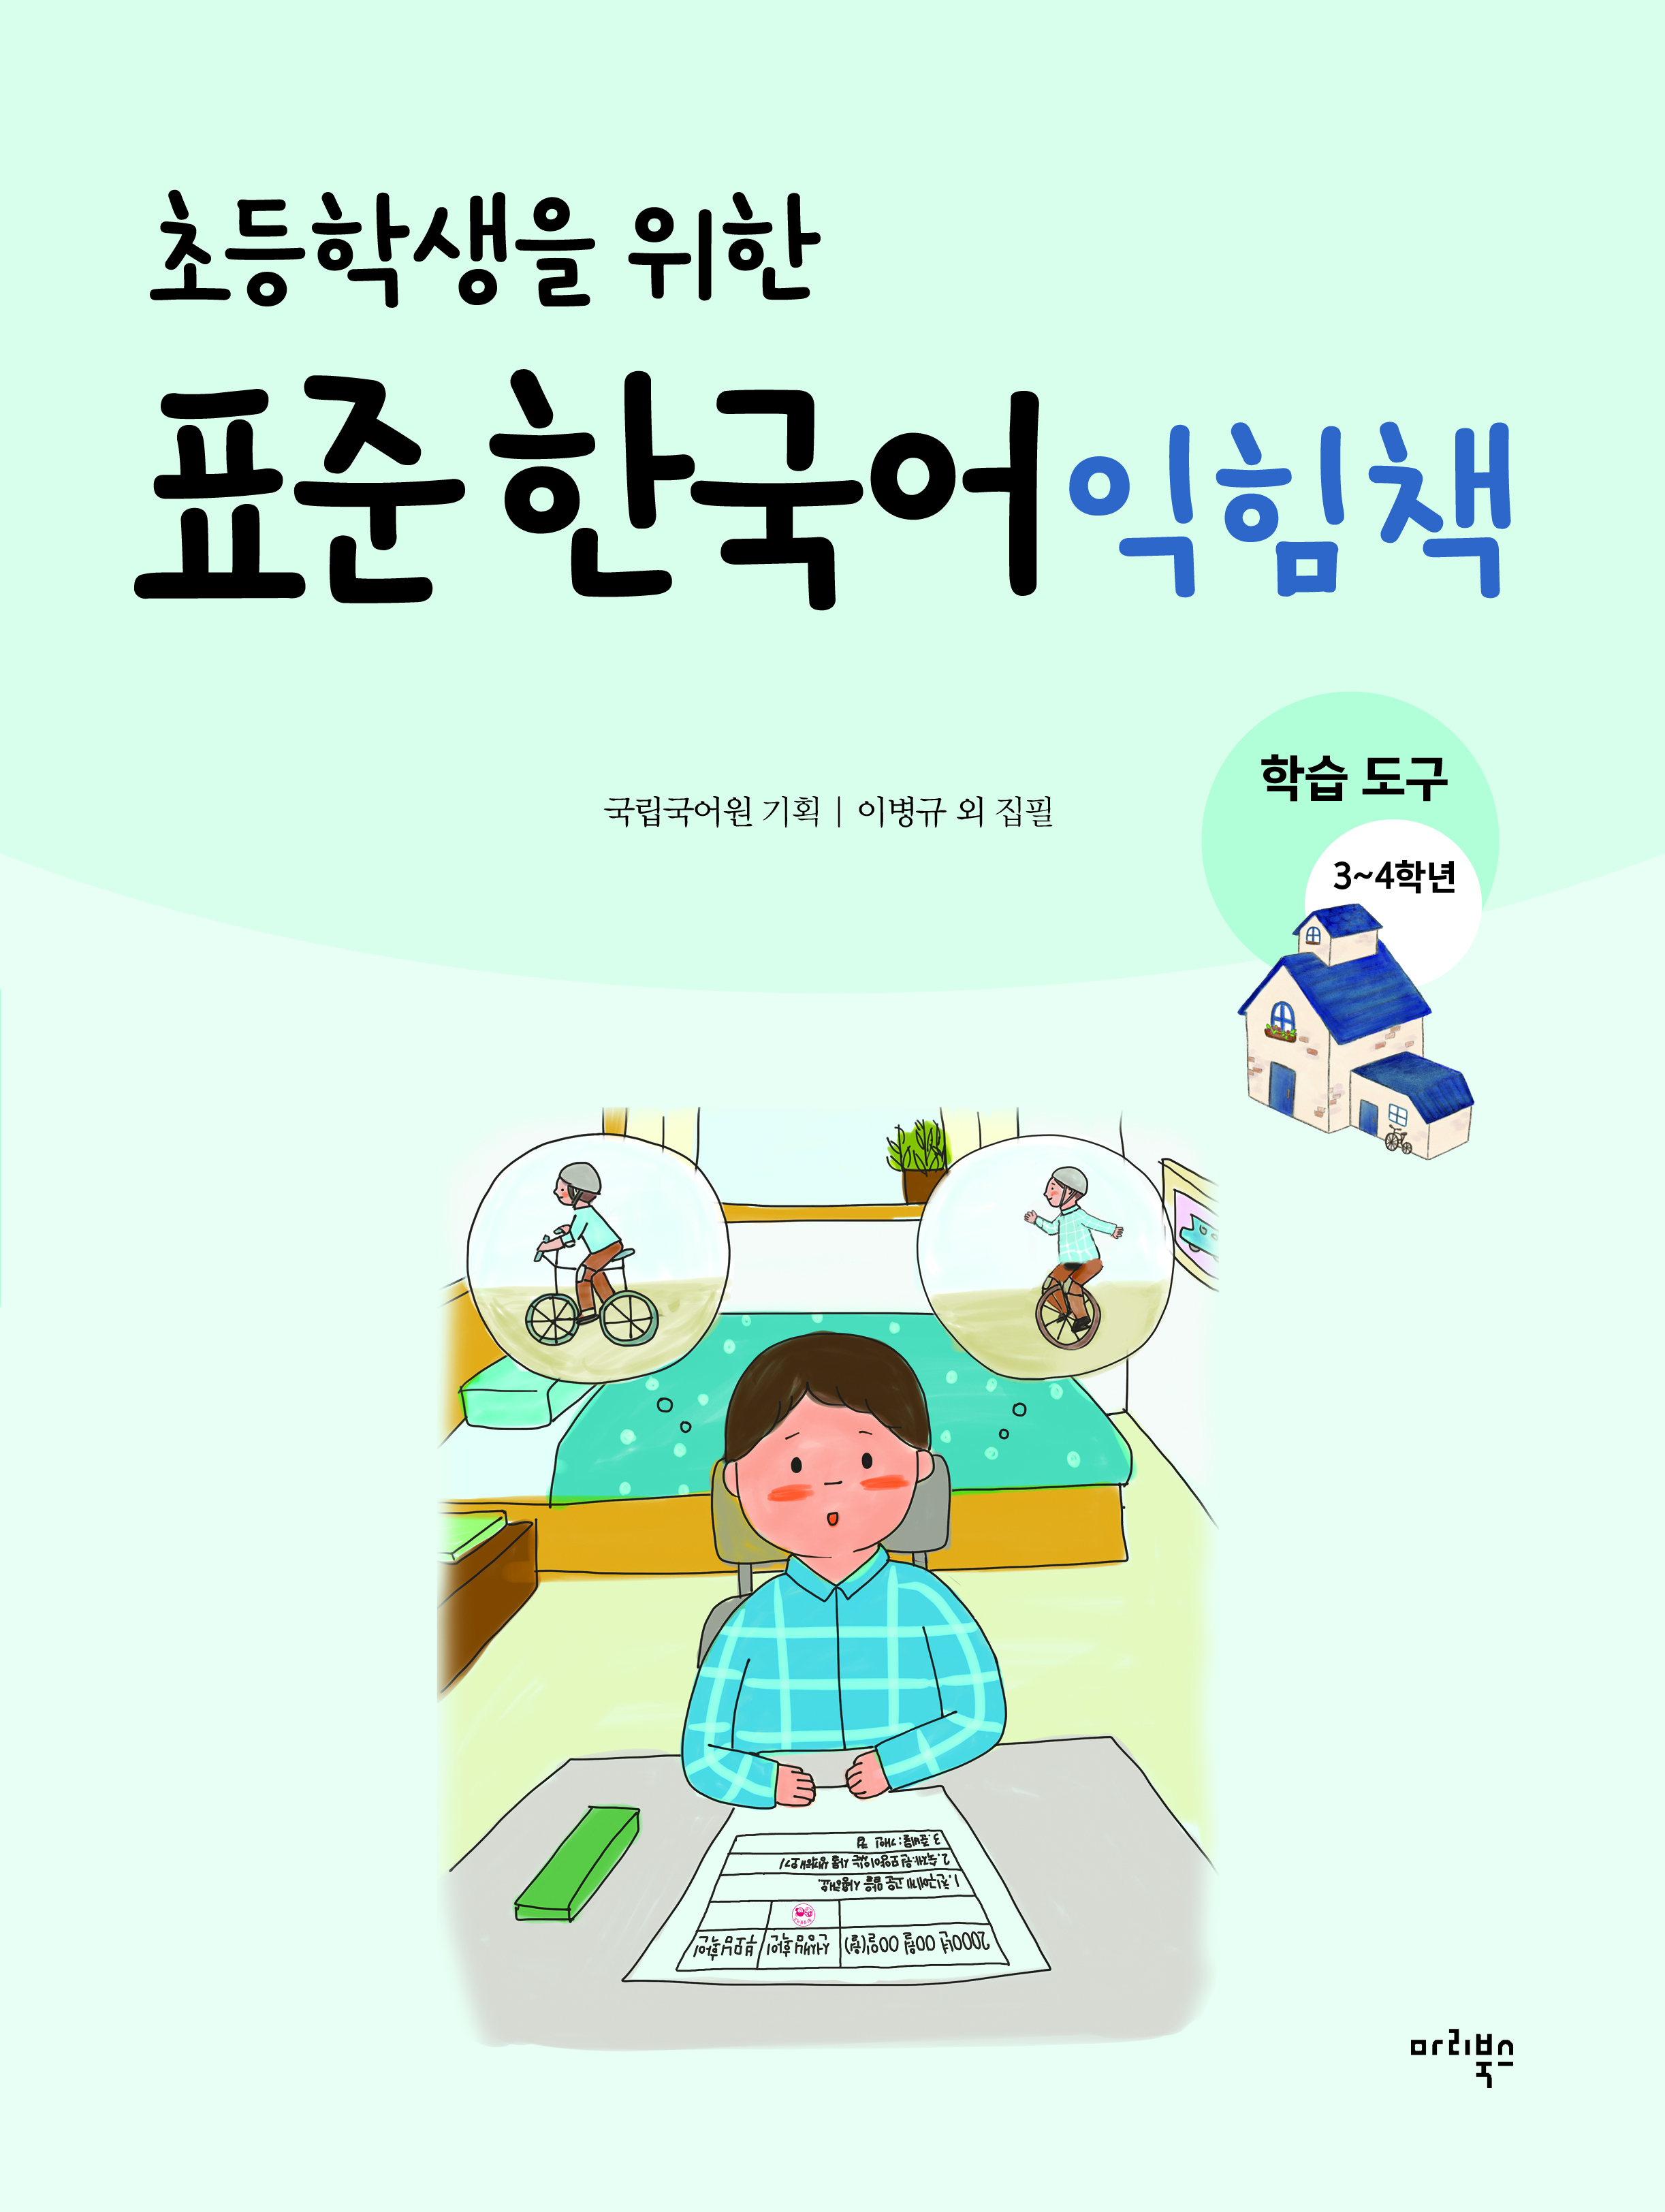 초등학생을 위한 표준 한국어 익힘책 학습 도구 3~4학년용